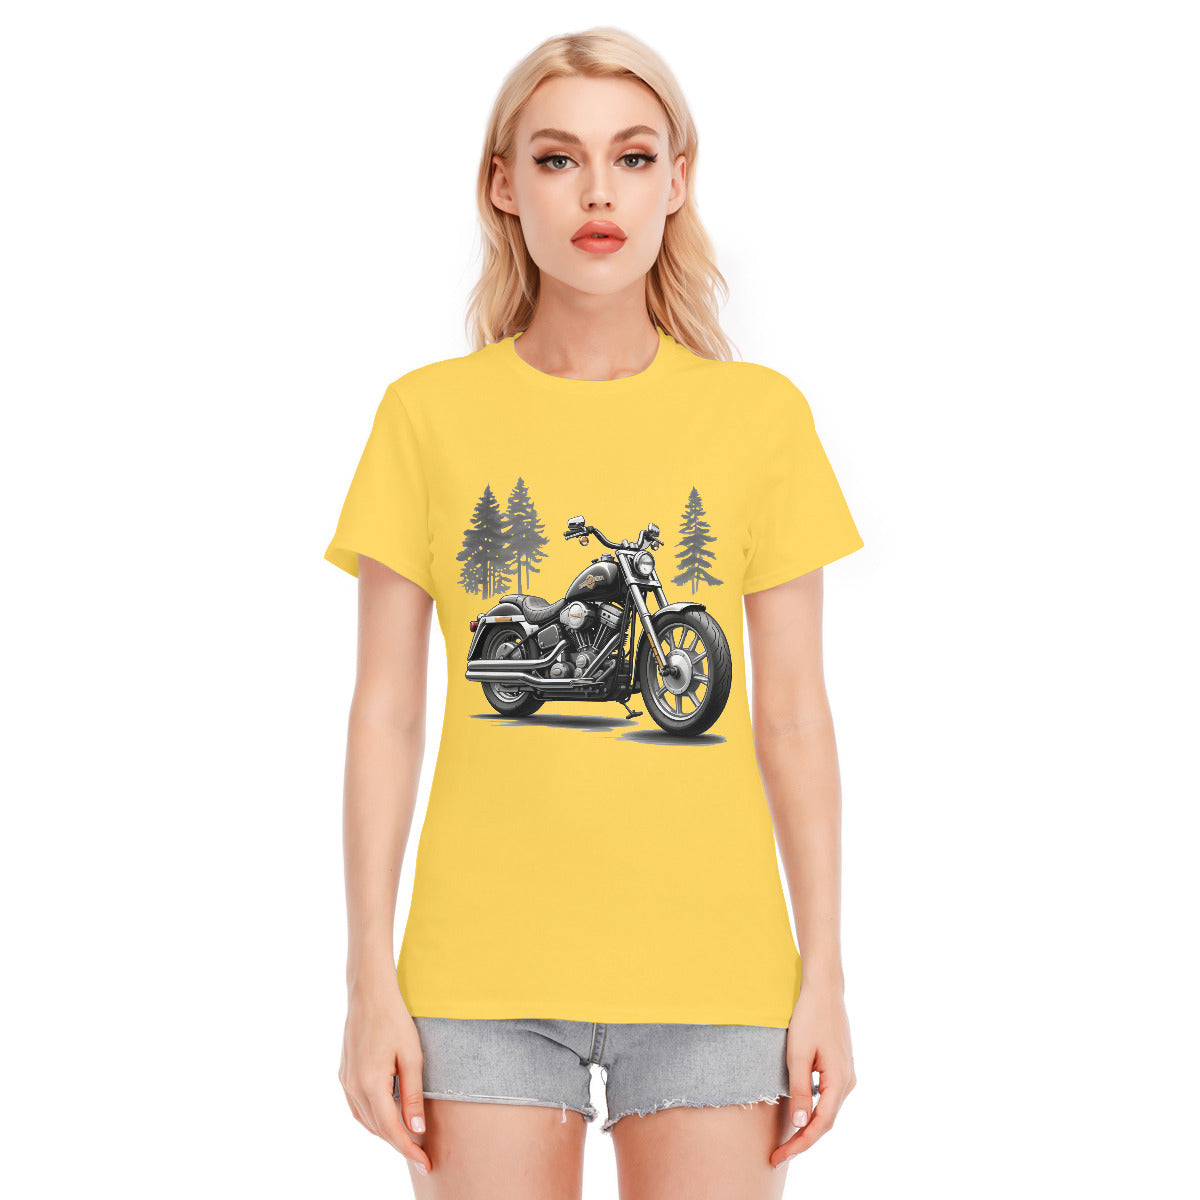 Motorcycle 108 -- Unisex O-neck Short Sleeve T-shirt